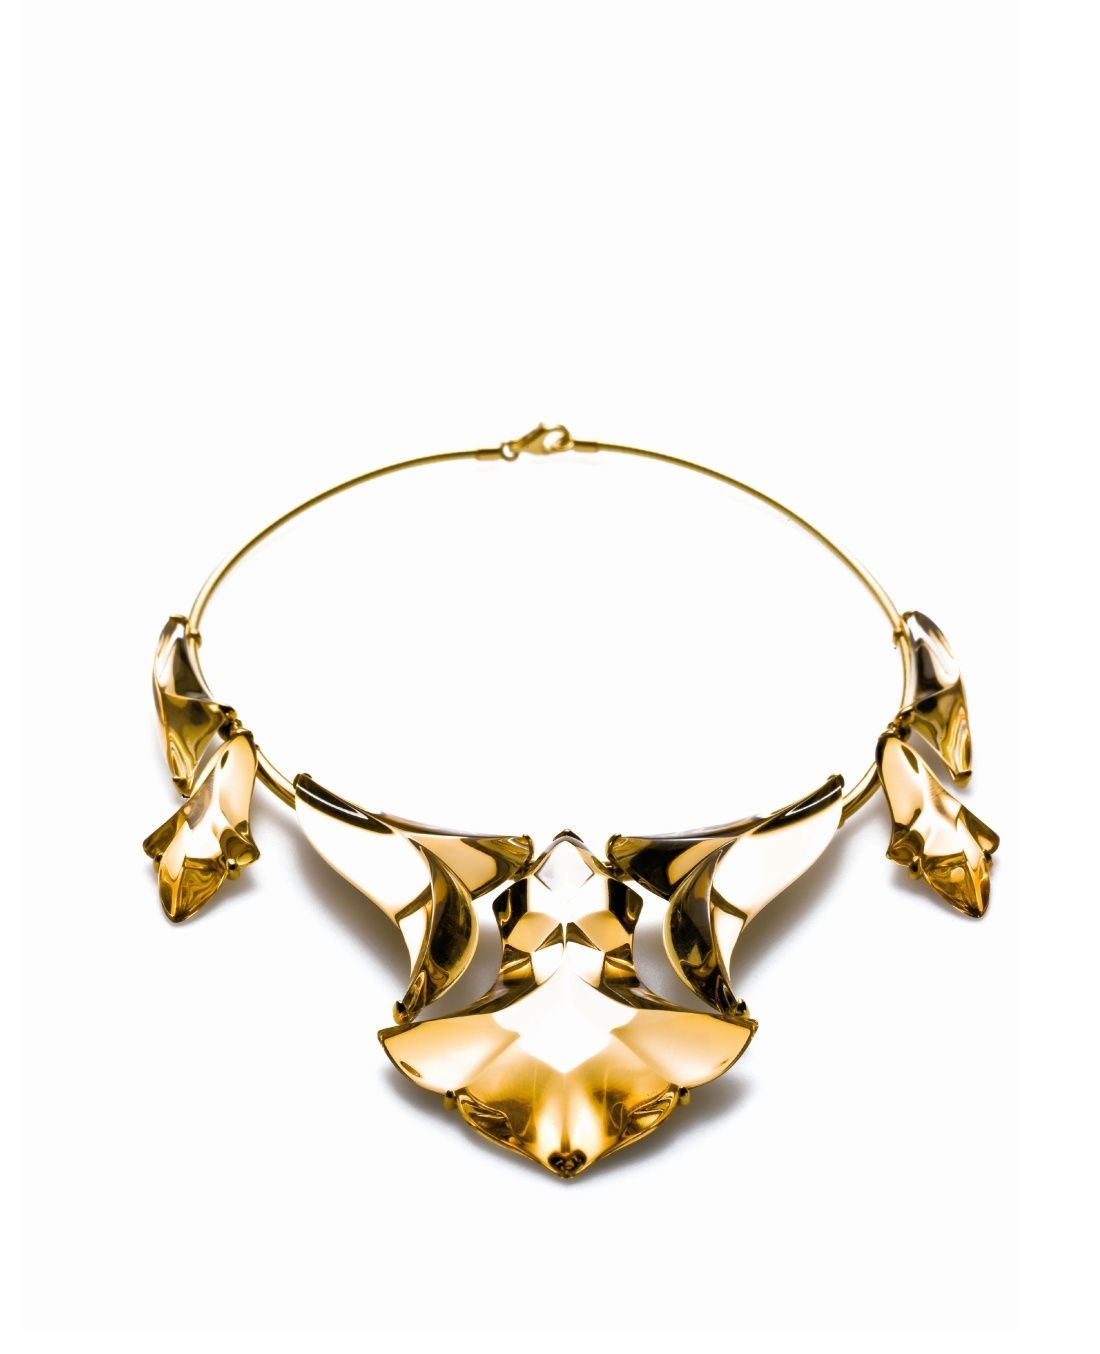 Luxusní náhrdelník Baccarat ze zlata a křišťálu